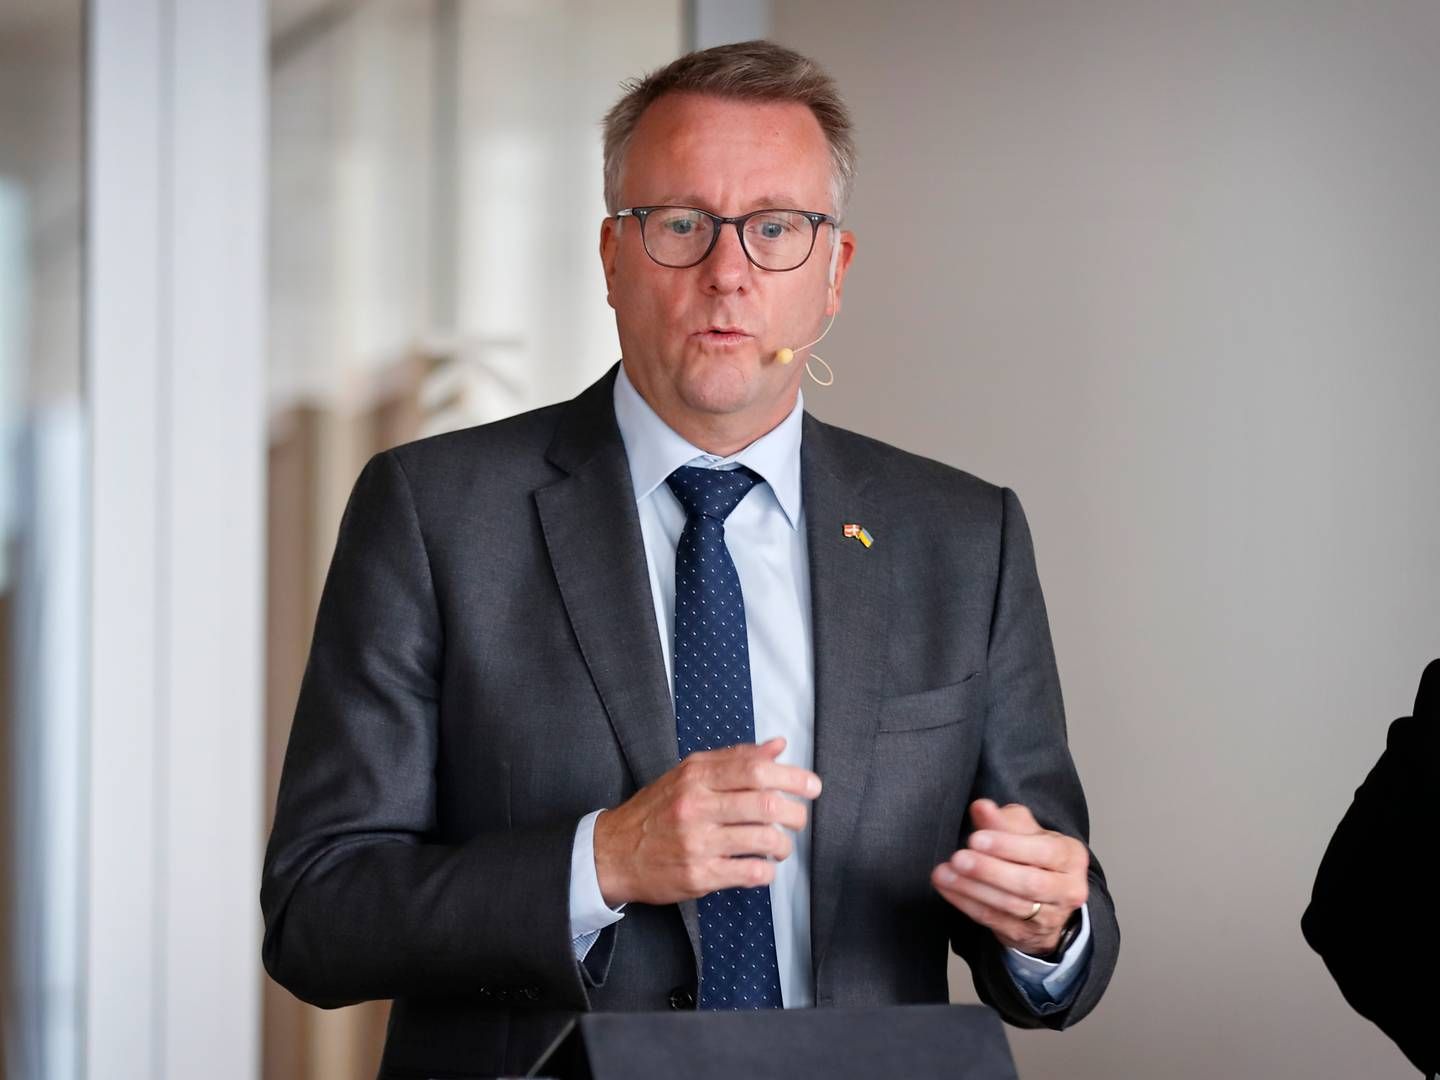 Erhvervsminister Morten Bødskov (S) mener, at der er større økonomiske ulemper for detailhandlen end gevinster for miljøet ved at skrotte "nej tak"-ordningen. | Foto: Jens Dresling/Ritzau Scanpix